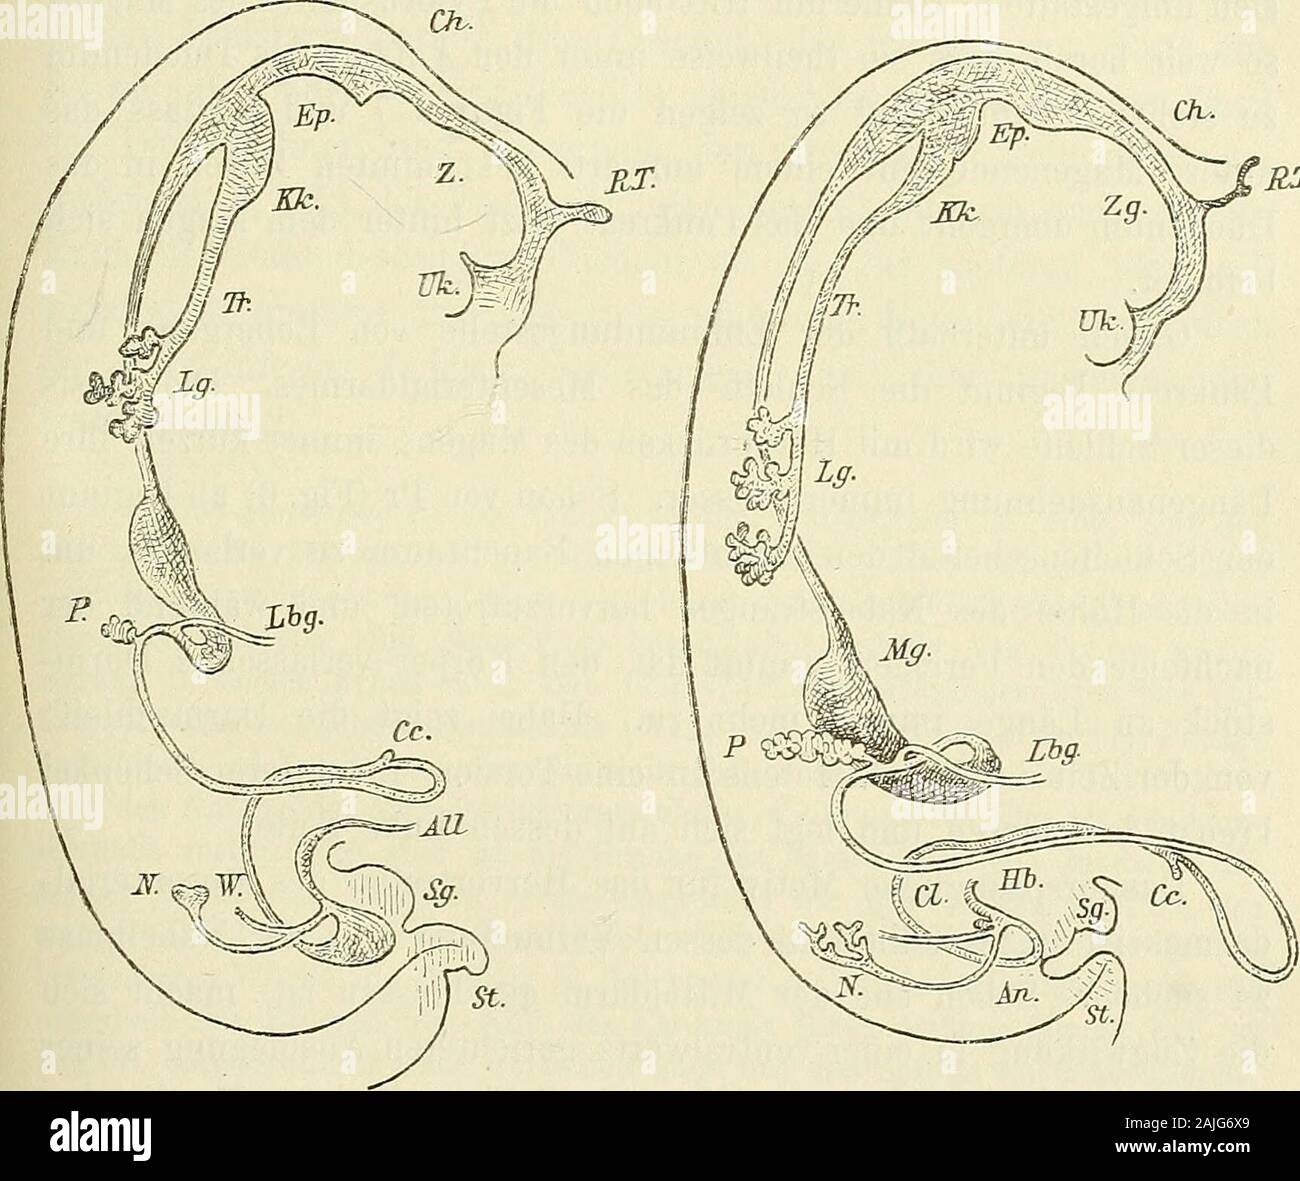 Anatomie menschlicher Embryonen . Fig. 6. Eingeweiderohr vom embrione Pr. Vergrösserung 15. Allgemeine Gliederung des Eingeweiderohres. 19 Abtheilungen und auf theilweise TJmlagerungen derselben. Das Mund-rachen- und das Kelilkopfgebiet auf später versparend, bemerken wirzunächst die zunehmende Entwickelung der Lungenanlage. Schonvon früh ab biegt sich das untere gespaltene Ende des Eespirations-rohres dorsalwärts um und es umgreift weiterhin die Speiseröhrevon beiden Seiten lei. Bald wächst muore Ende in getrennte Sprossenaus, die dann weiterhin neue, secundäre Seitensprossen treiben. Dabeikann Foto Stock